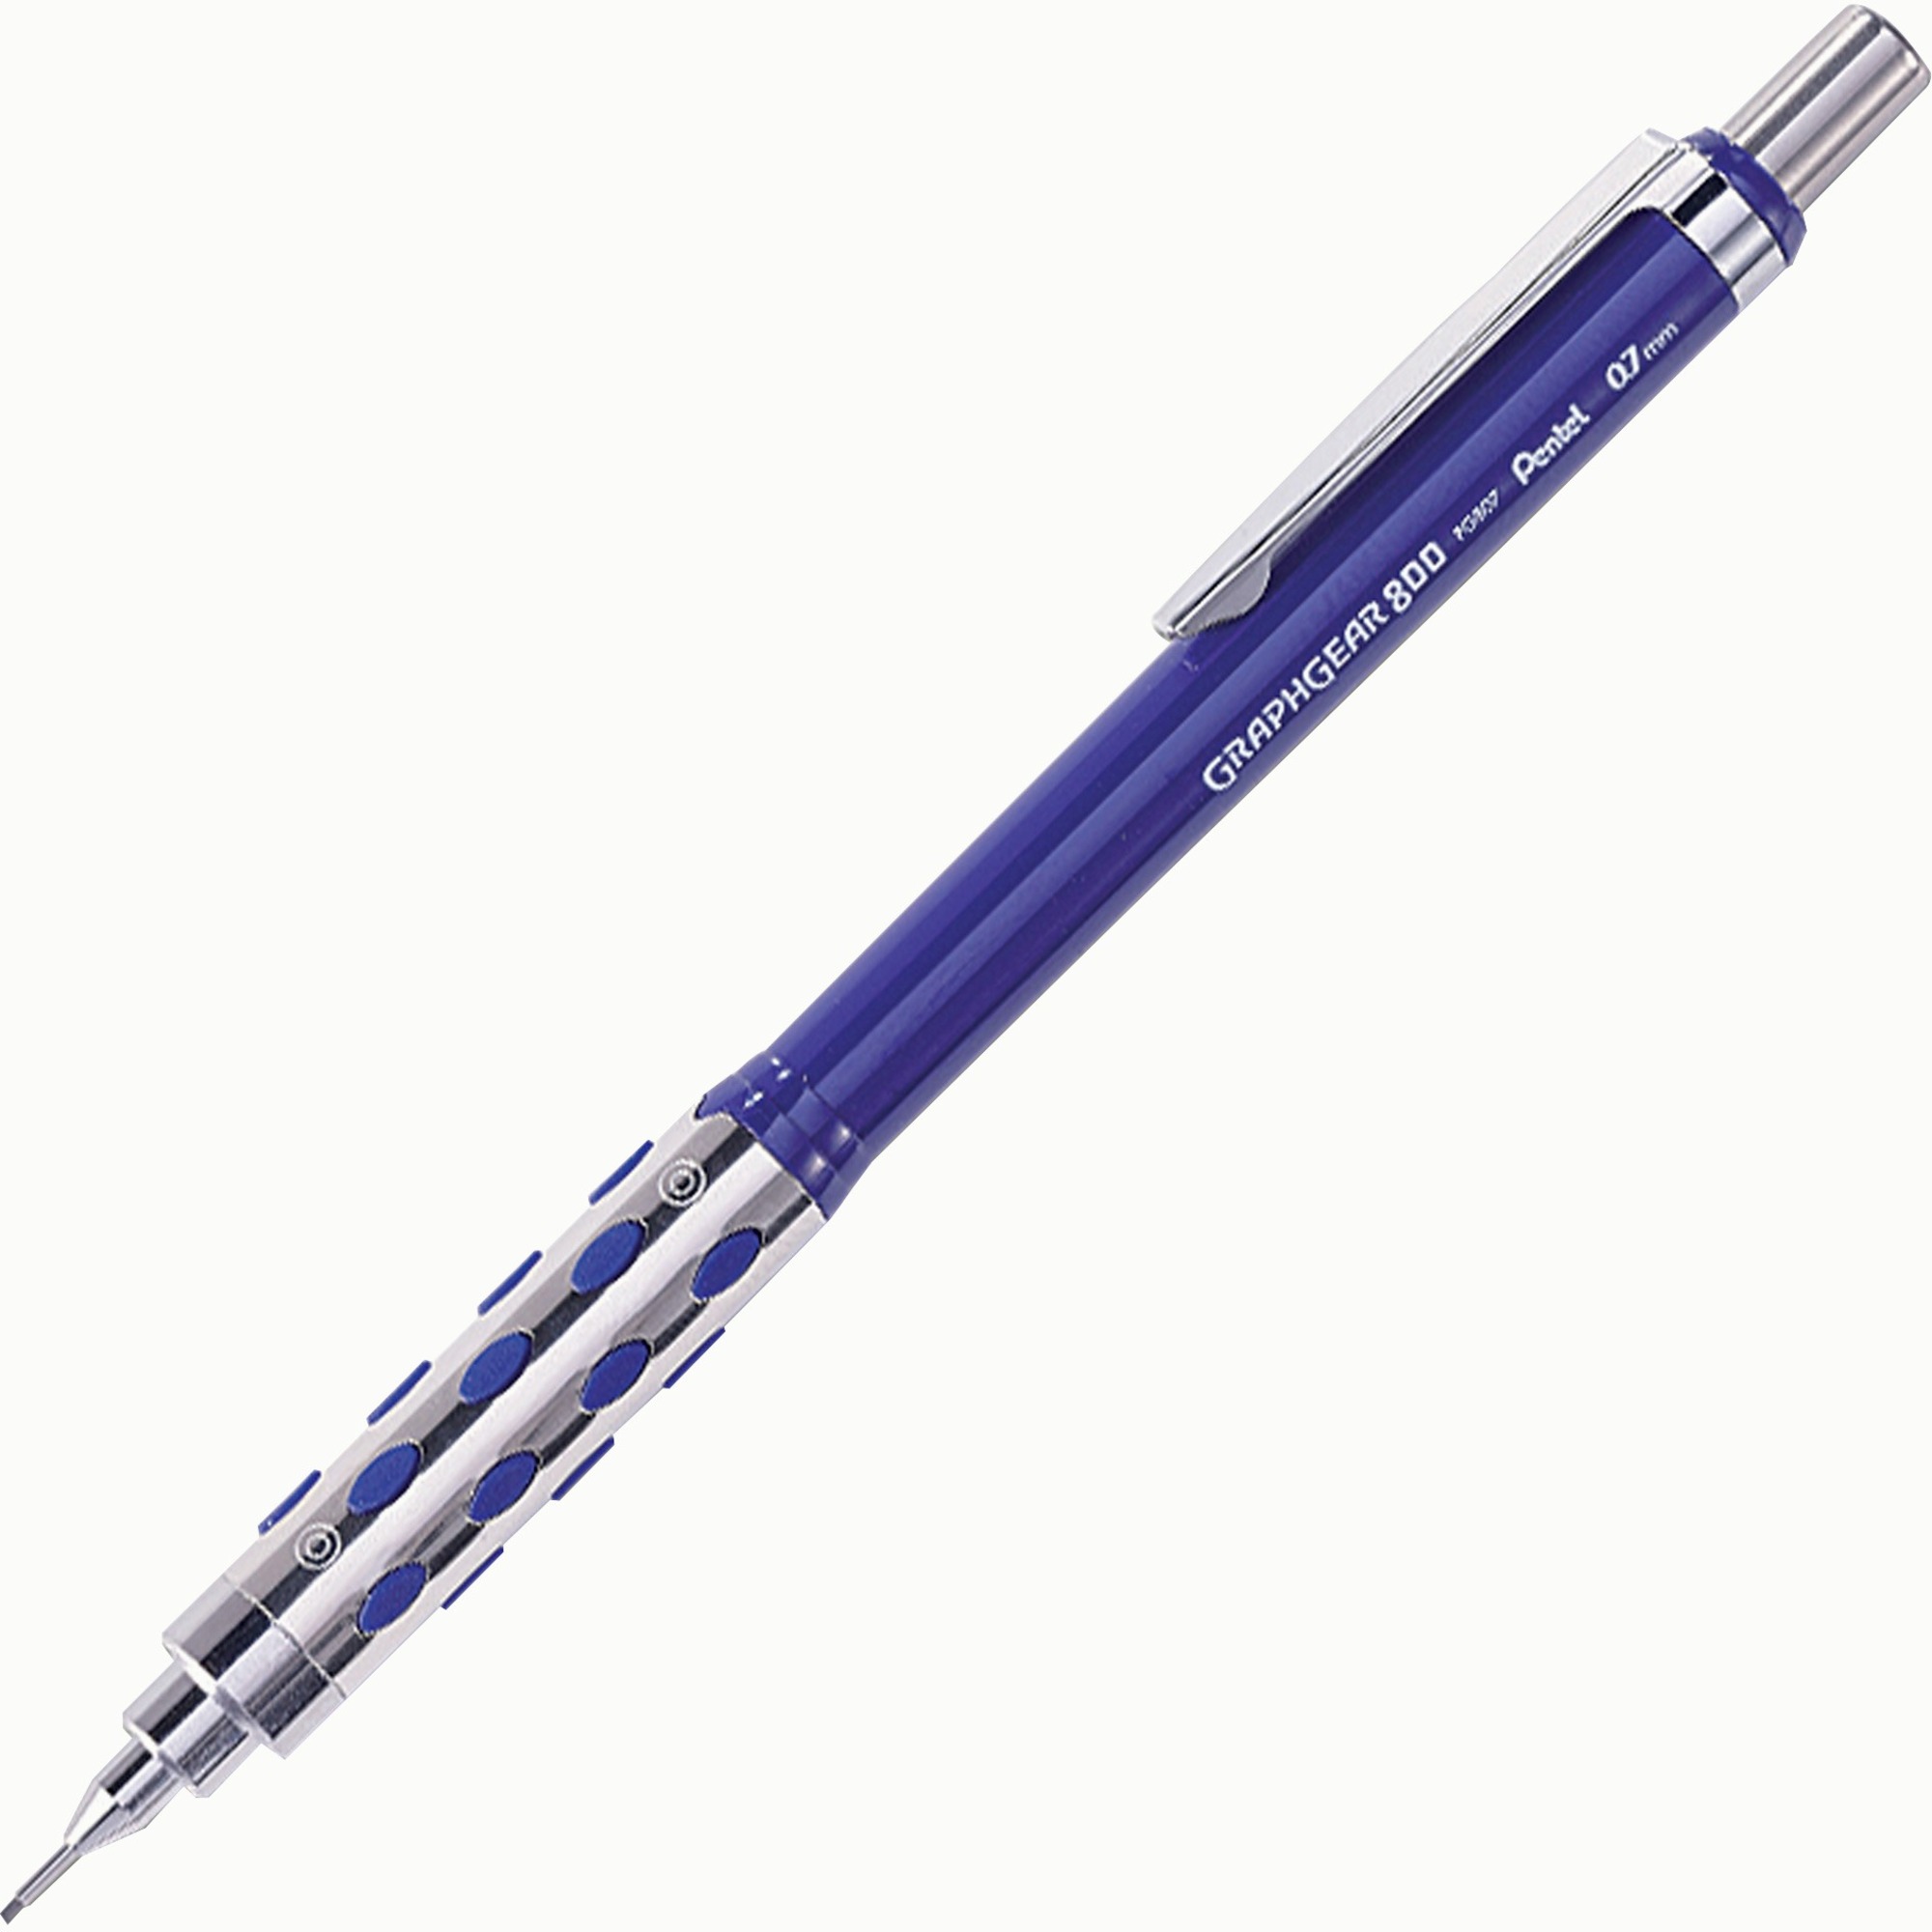 Pentel GRAPHGEAR 800. Механический карандаш Pentel. Pentel GRAPHGEAR 500 pg523. Карандаш 0.7